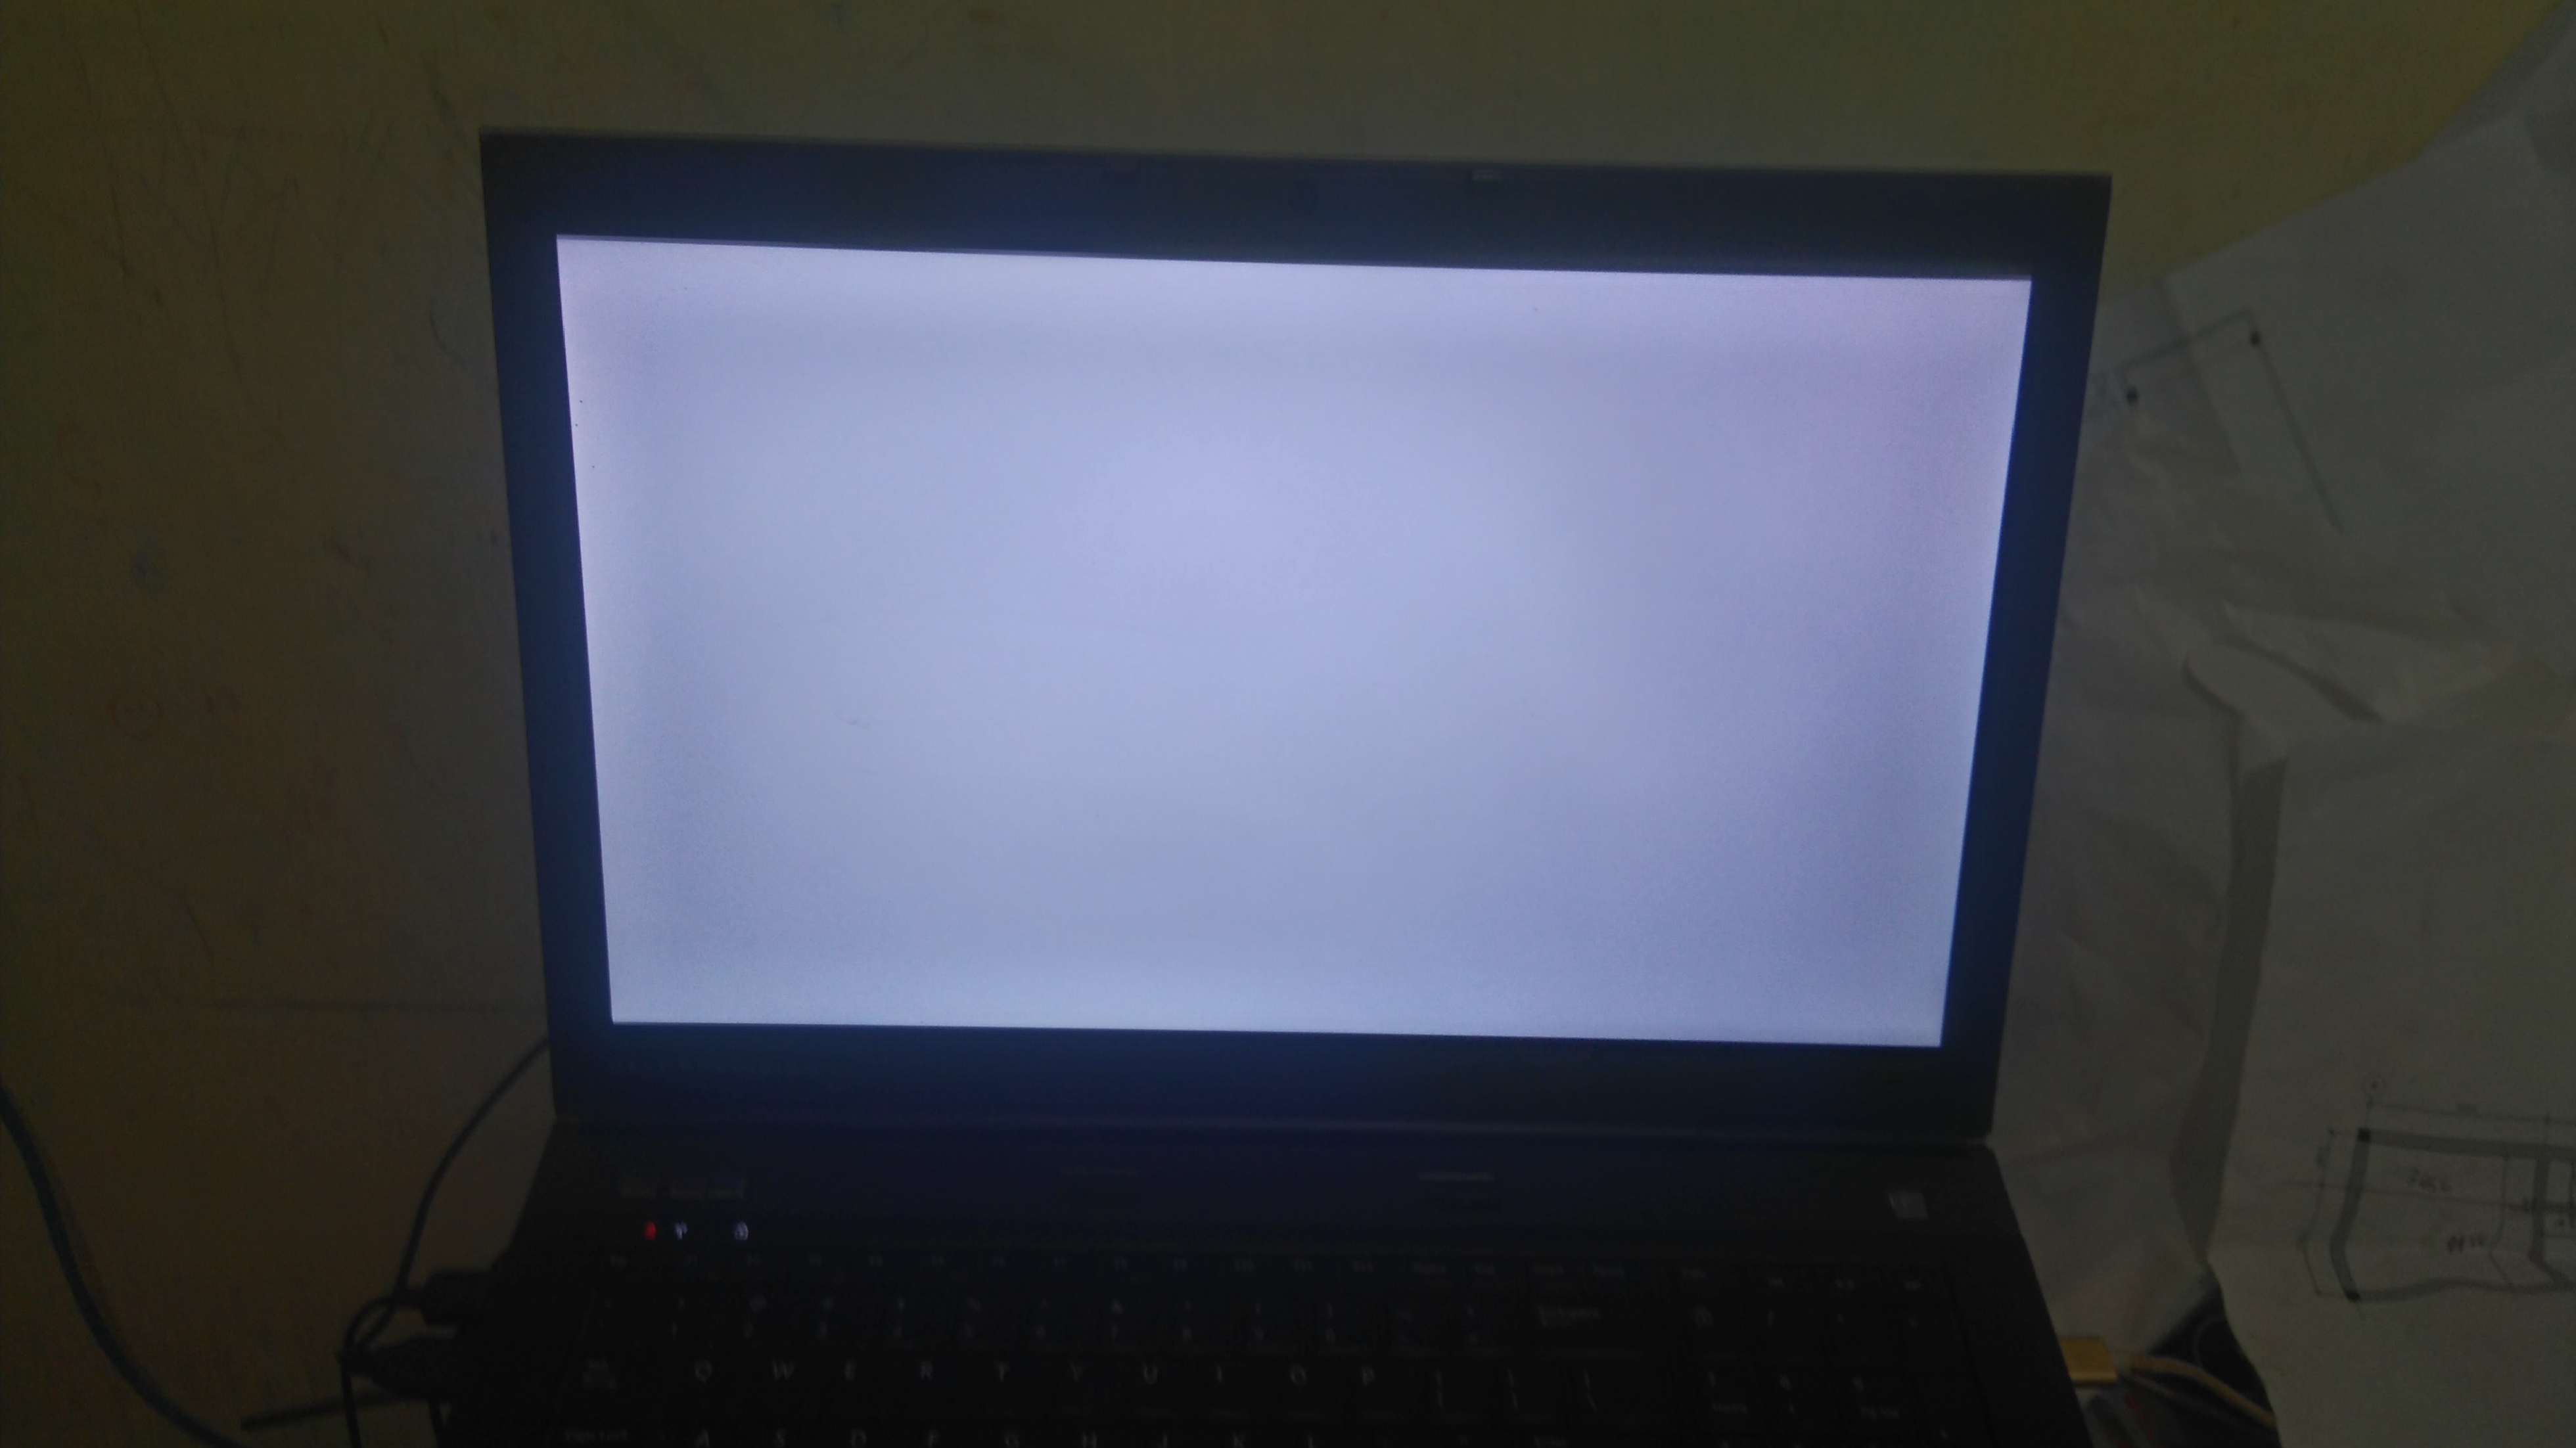 Lỗi màn hình laptop bị trắng xóa  Nguyên nhân và cách khắc phục  Laptop  Thiên Thành Kho laptop giá rẻ